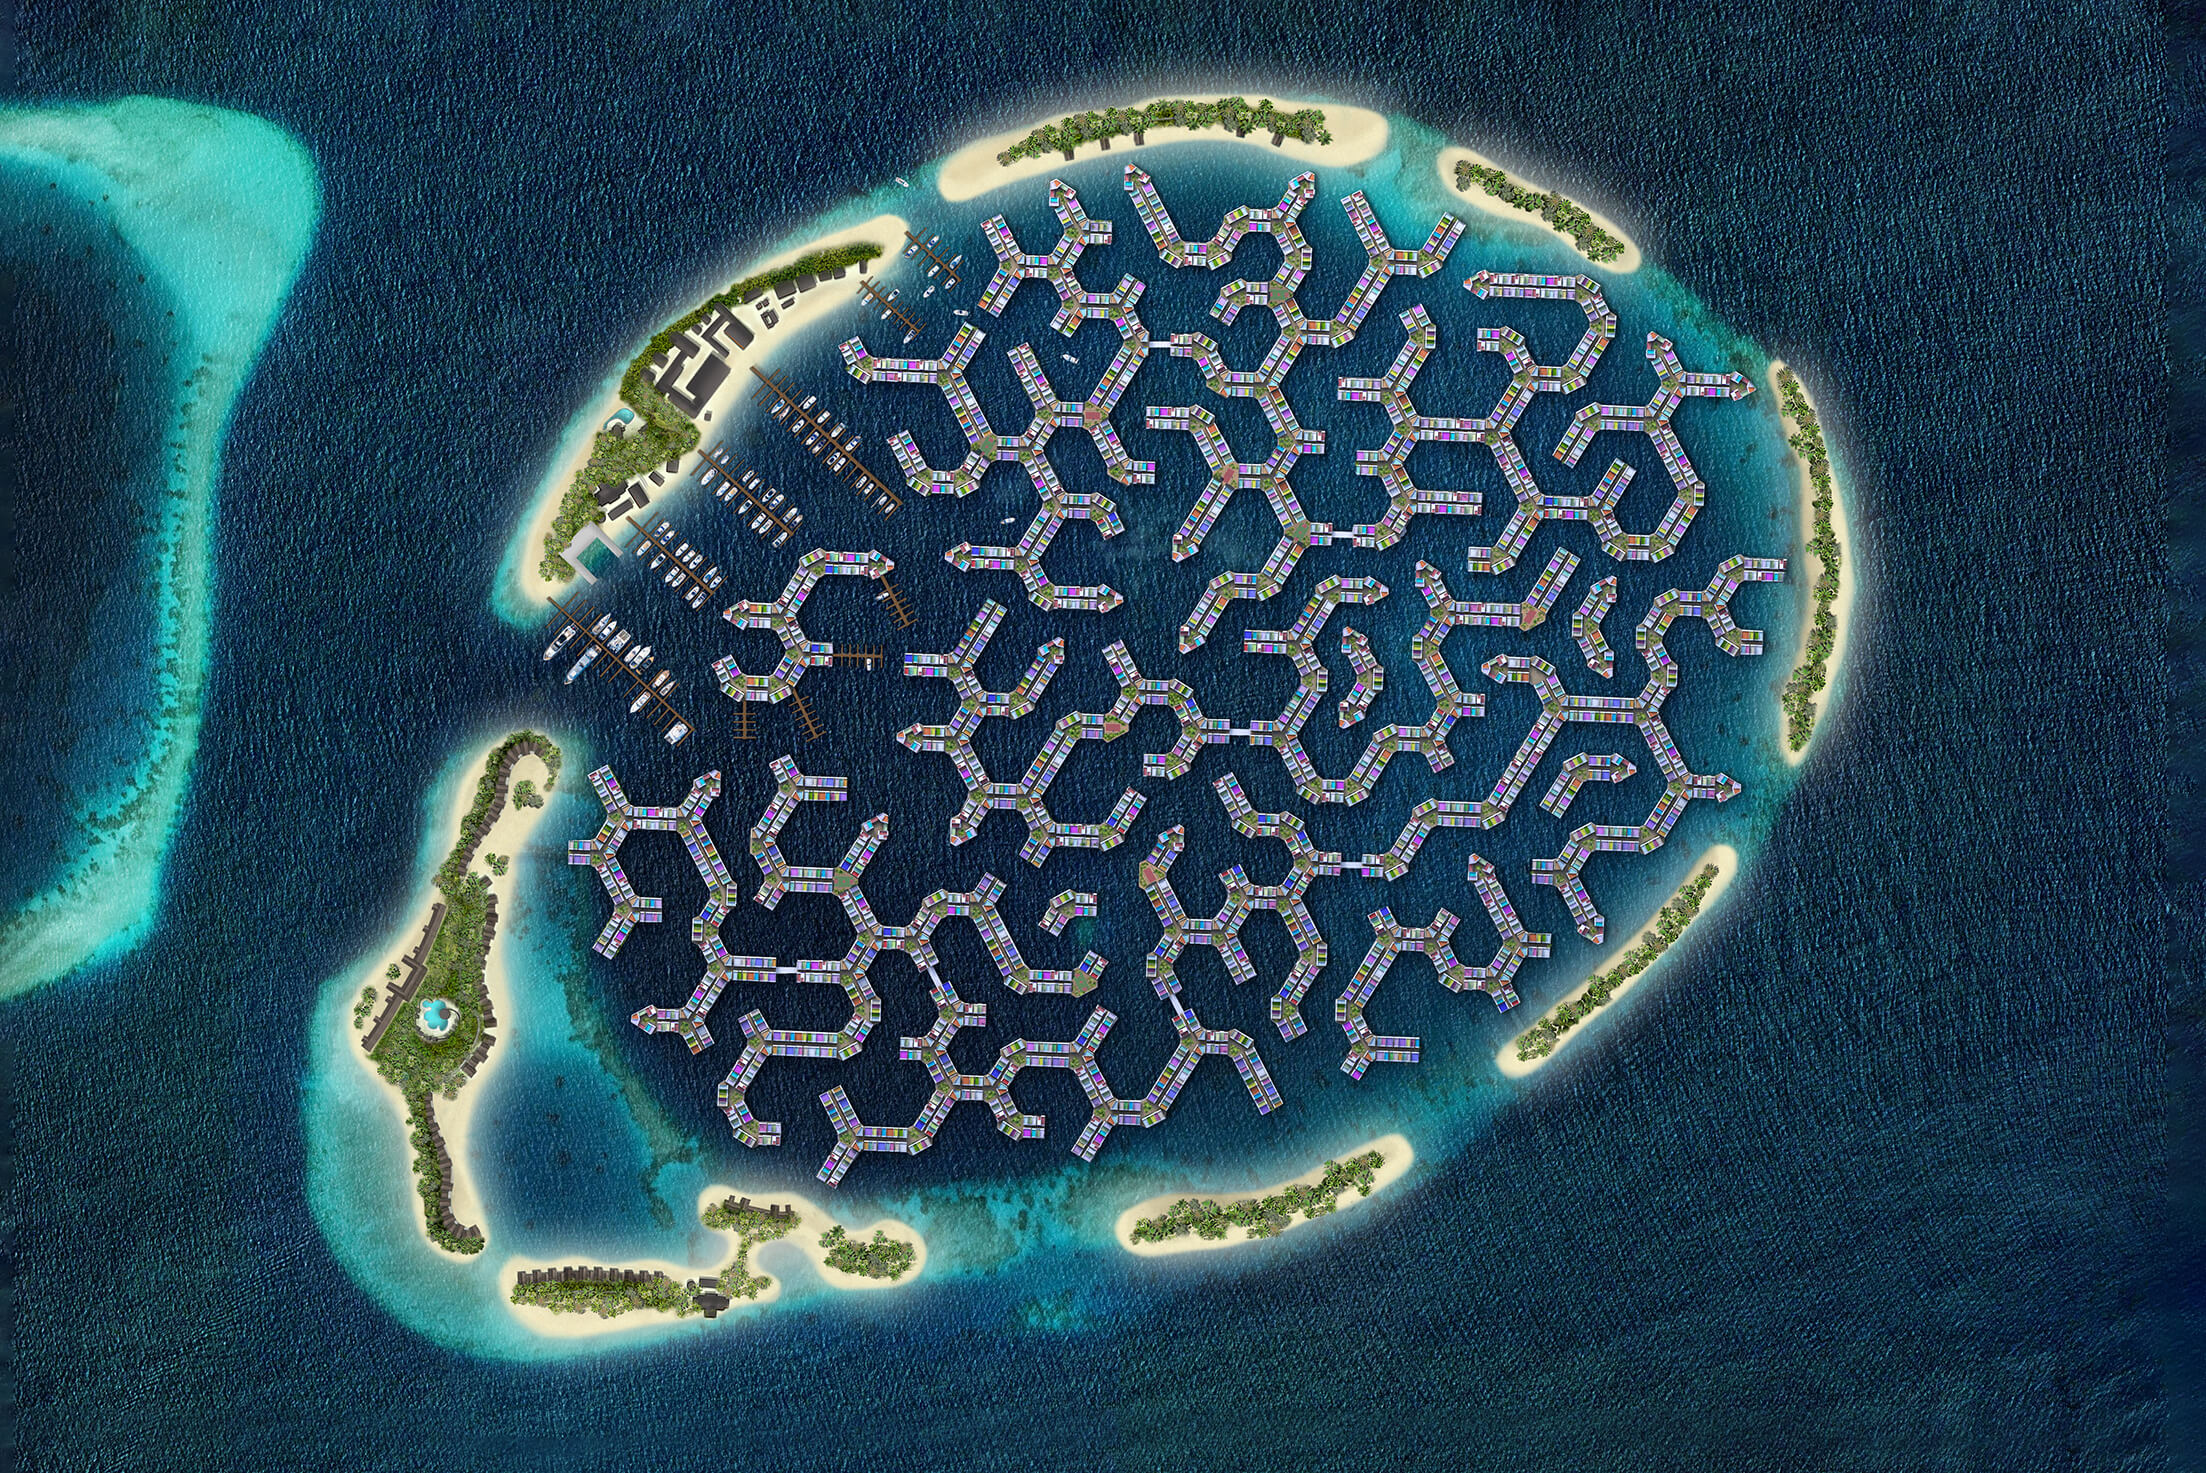 Die Schwimmende Stadt Auf Den Malediven Stellt Sich Der Herausforderung Des Steigenden Meeresspiegels